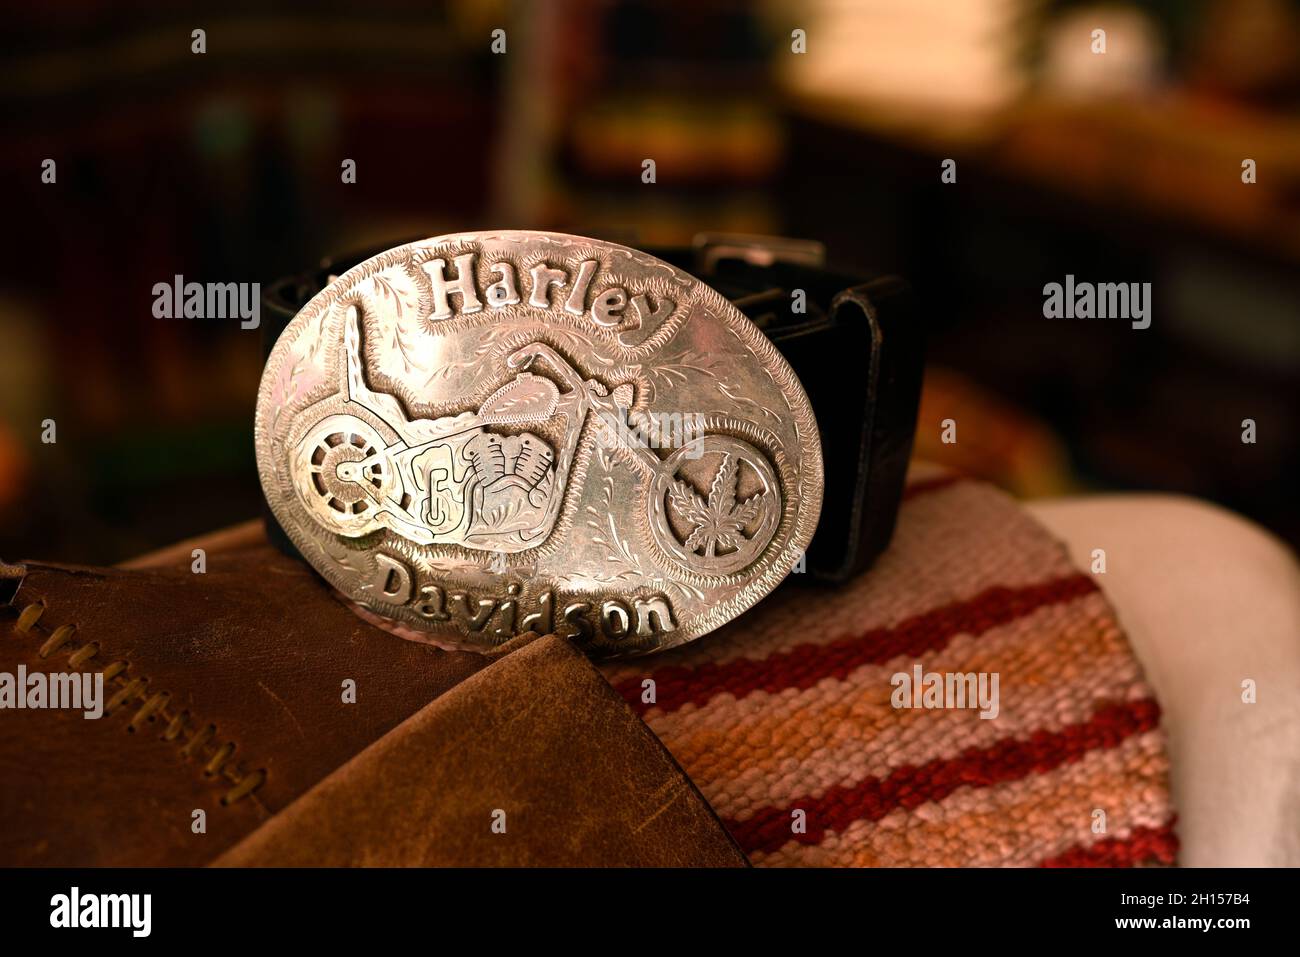 Fibbia della cintura in argento personalizzata con impresso l'immagine di una motocicletta Harley Davidson. Foto Stock